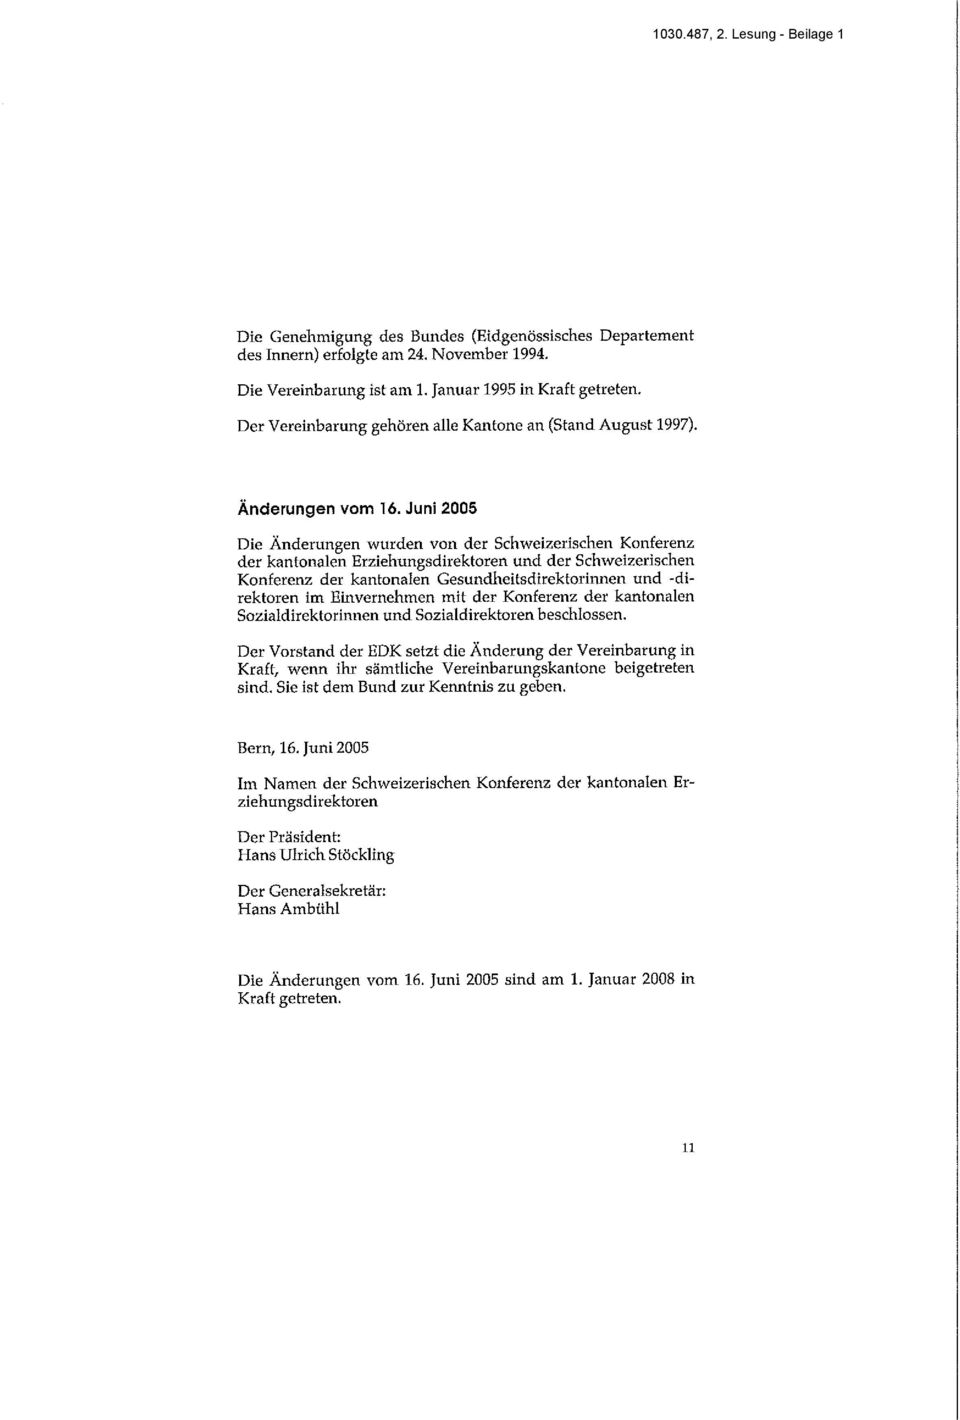 Juni 2005 Die Änderungen wurden von der Schweizerischen Konferenz der kantonalen Erziehungsdirektoren und der Schweizerischen Konferenz der kantonalen Gesundheitsdirektorinnen und -direktoren im